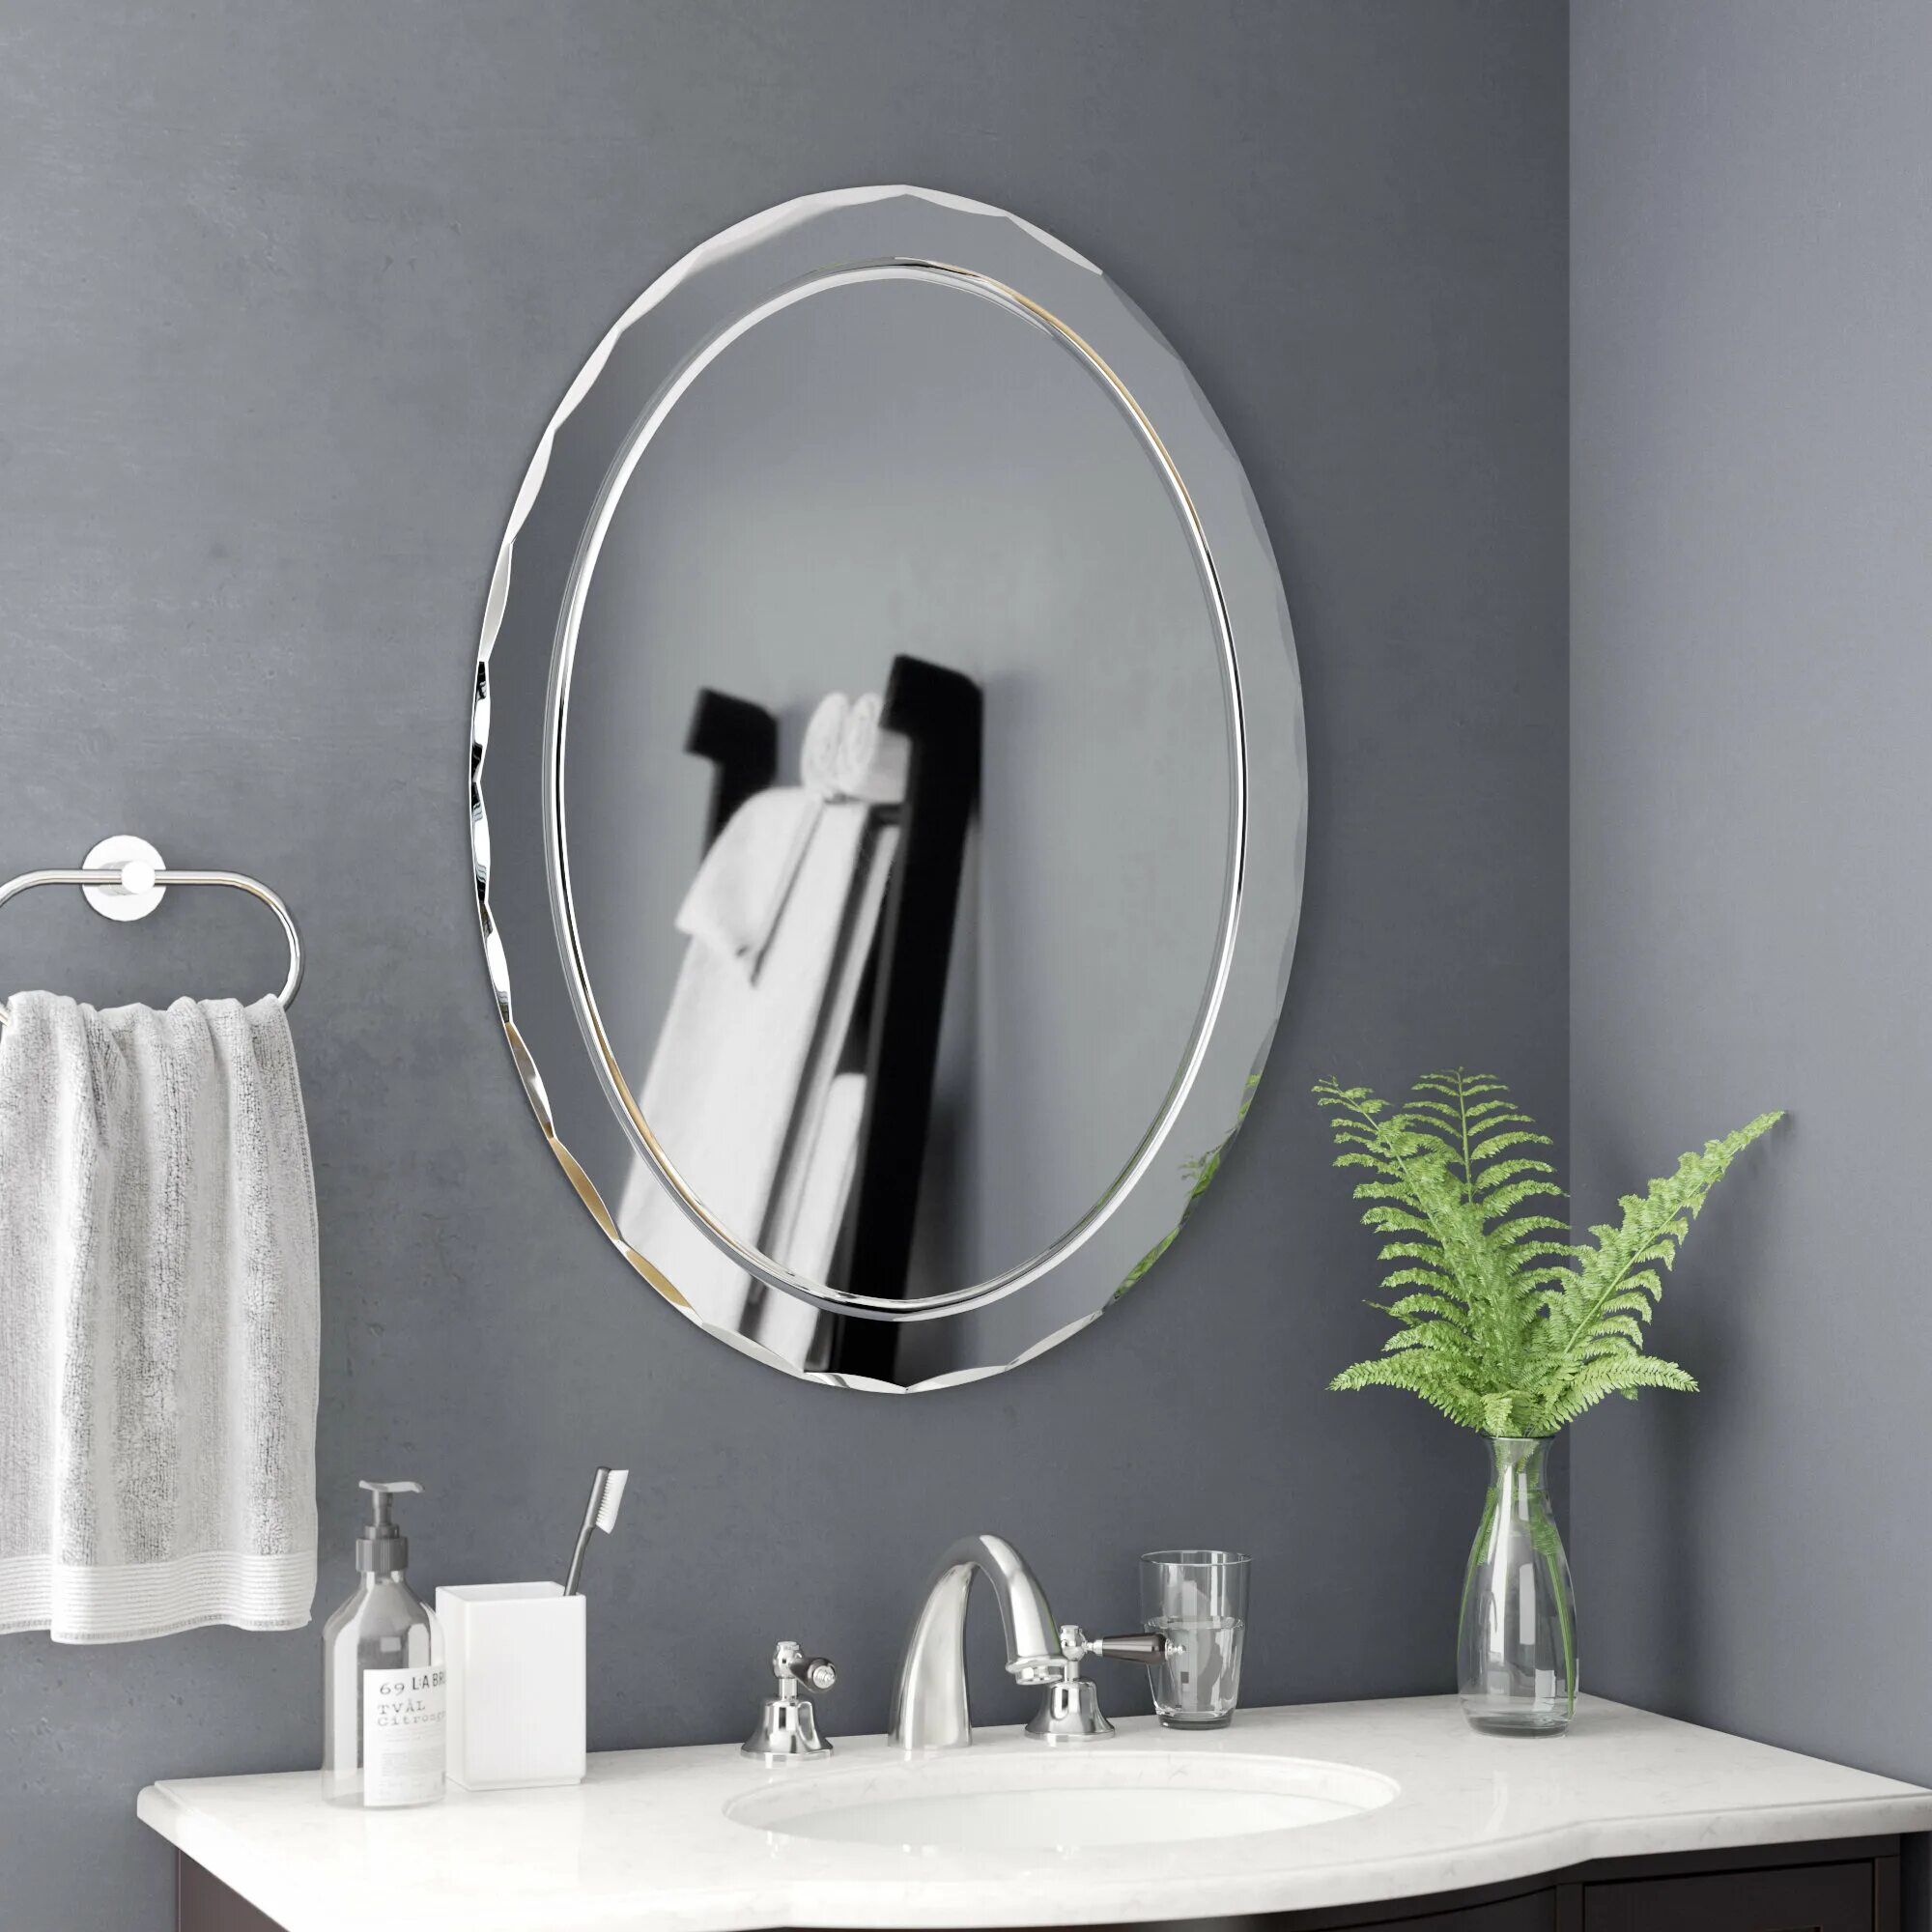 Подвесное зеркало для ванной. Зеркало в ванную. Стильное зеркало в ванную. Овальное зеркало в ванную. Овальное зеркало в ванной.